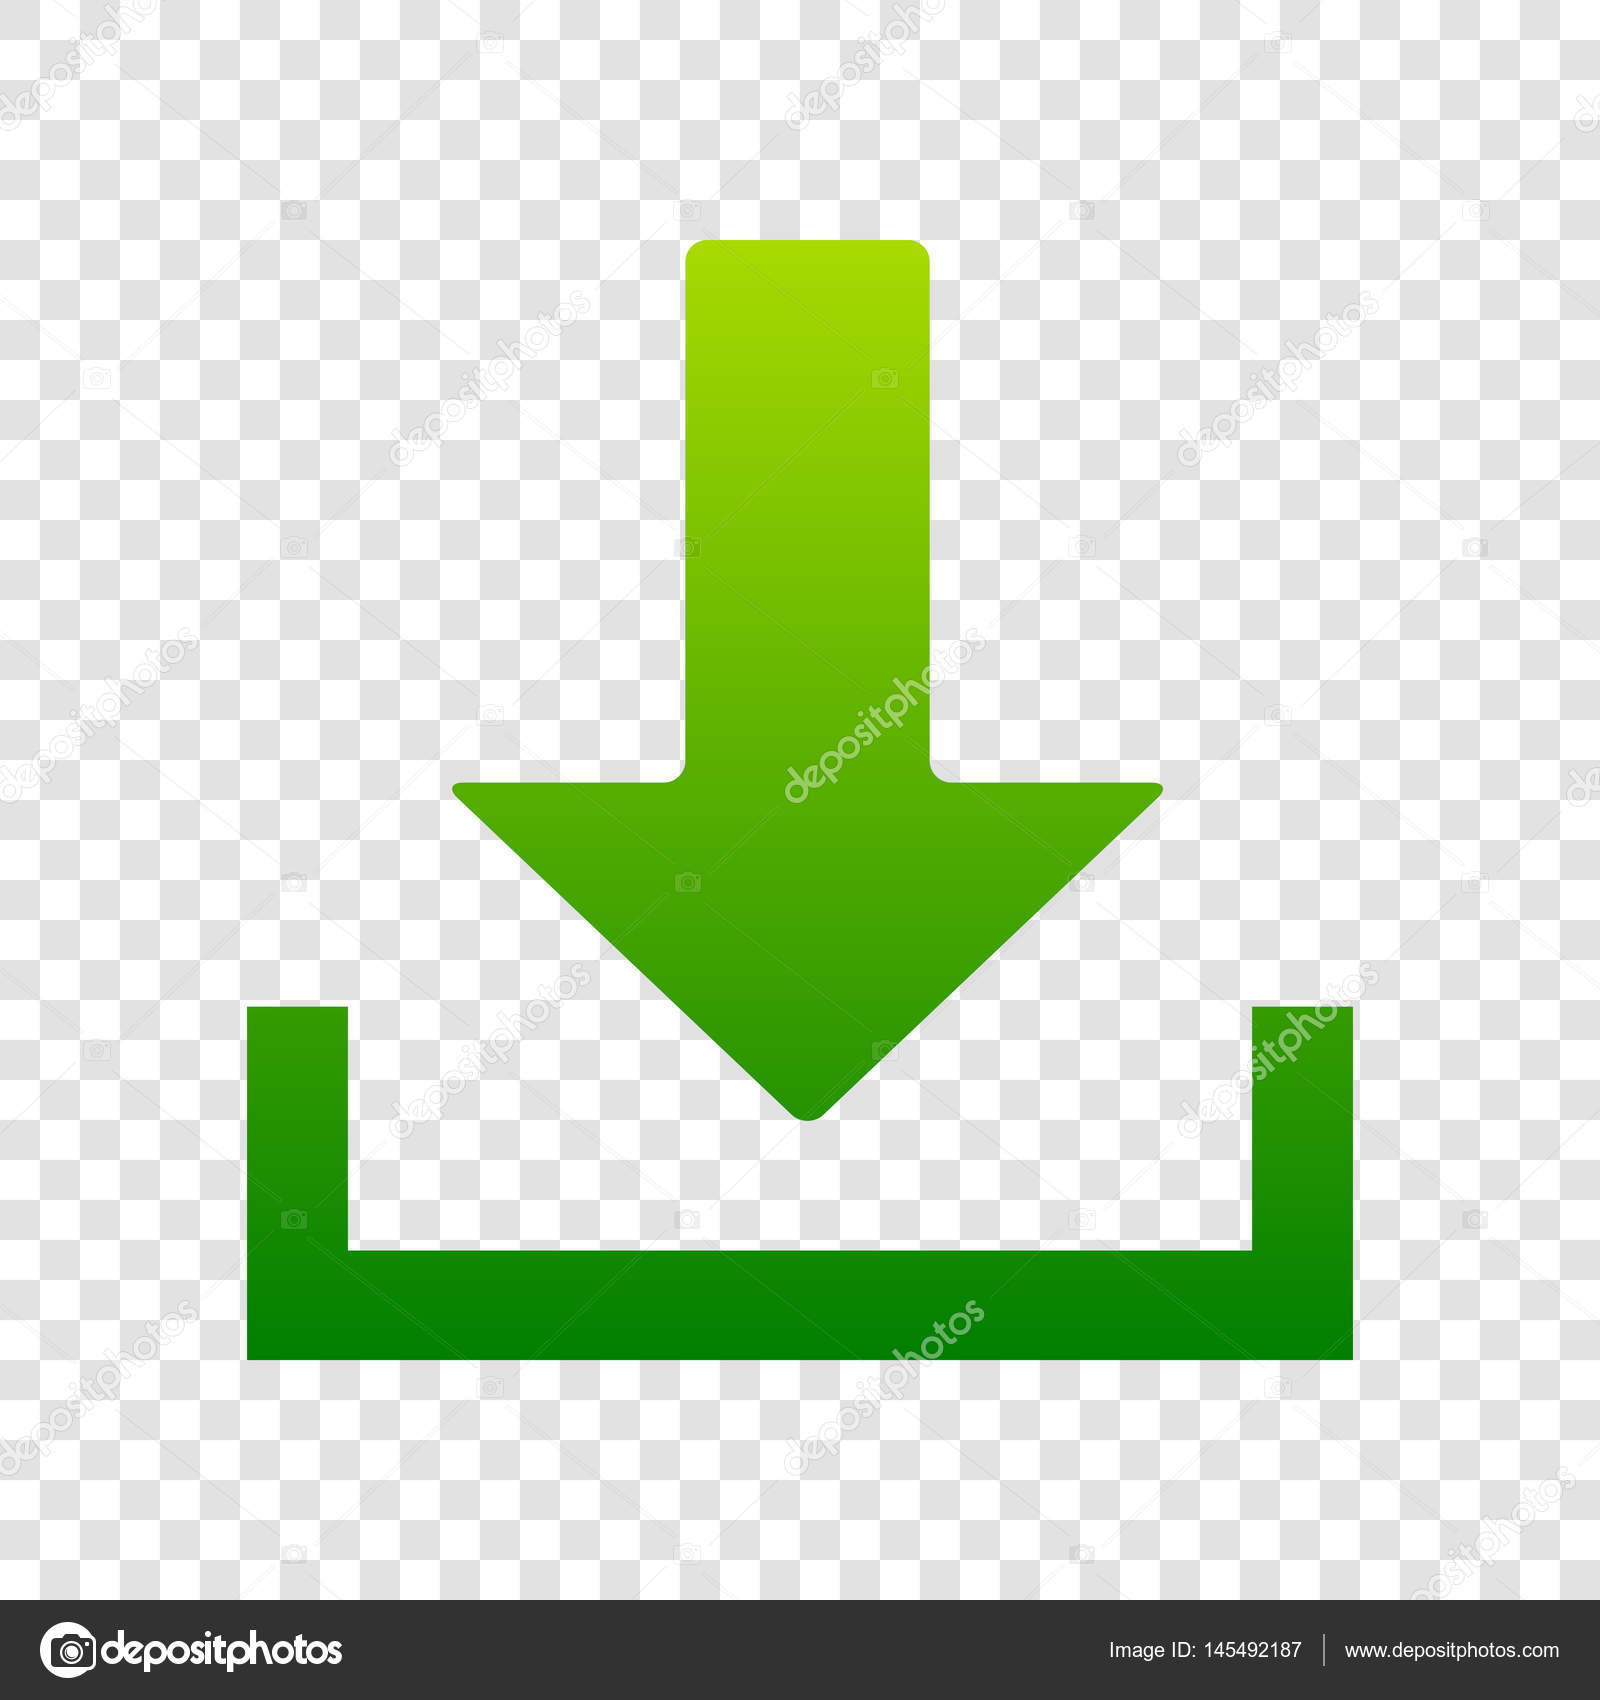 記号図をダウンロードしてください ベクトル 透明な背景に緑色のグラデーションのアイコン ストックベクター C Asmati1702 Gmail Com